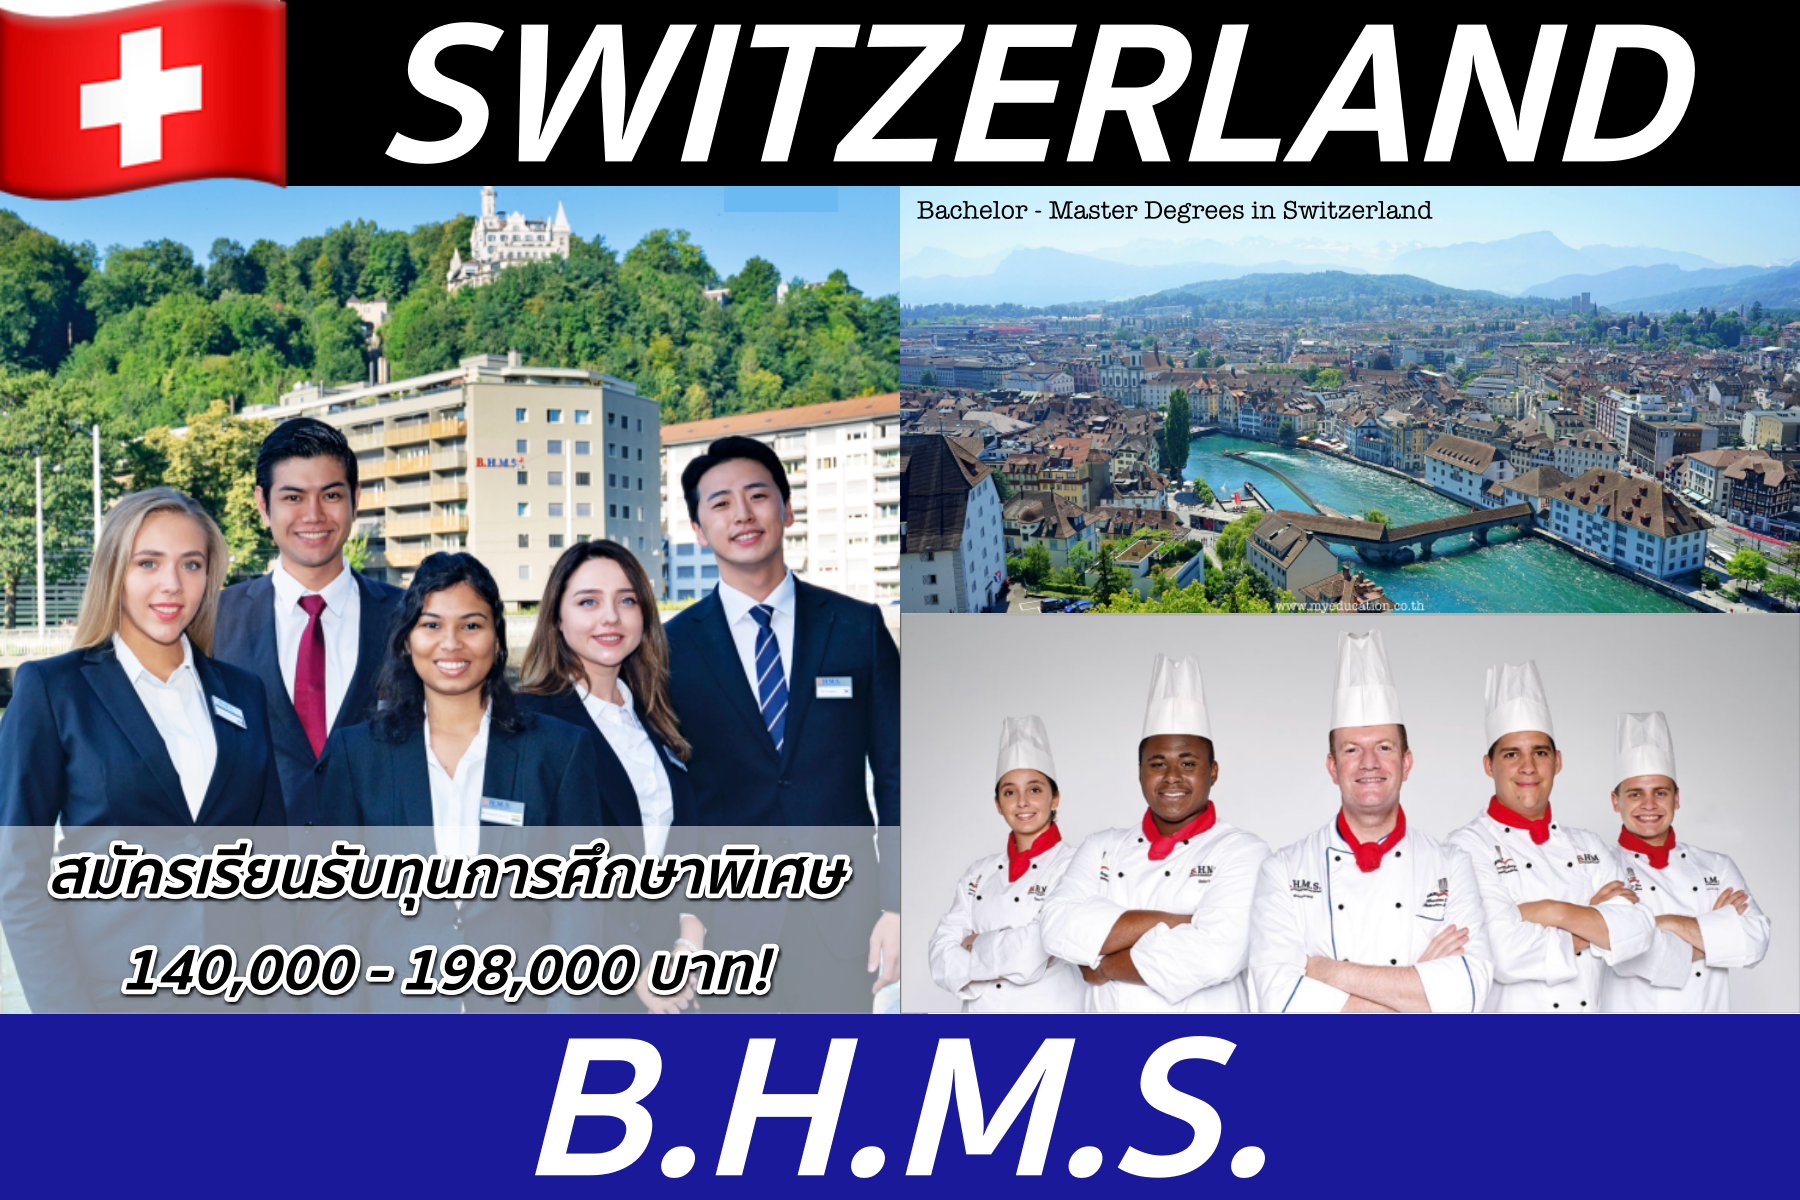 เรียน+ฝึกงานเงินเดือน 80,000! ป.ตรี-ป.โทที่ BHMS, Switzerland *ทุนการศึกษาสูงสุด 198,000บ.*